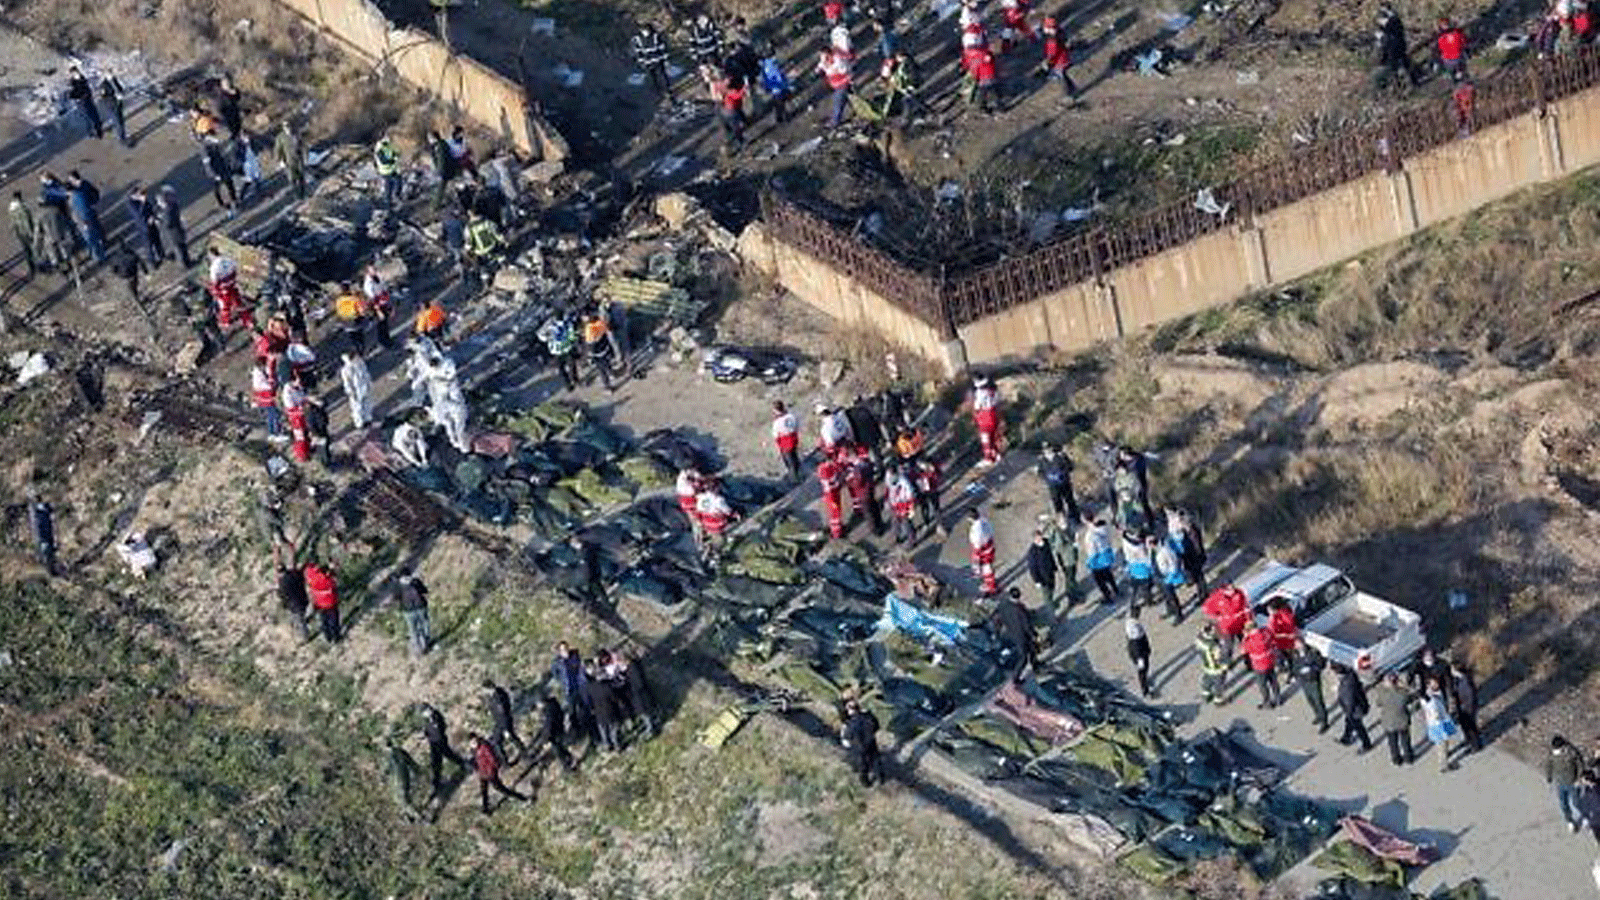 أشخاص وفرق إنقاذ وسط الجثث والحطام بعد أن أسقطت القوات الإيرانية بطريق الخطأ طائرة أوكرانية تقل 176 راكبا بالقرب من مطار الإمام الخميني في العاصمة الإيرانية طهران في 8 كانون الثاني/ يناير 2020